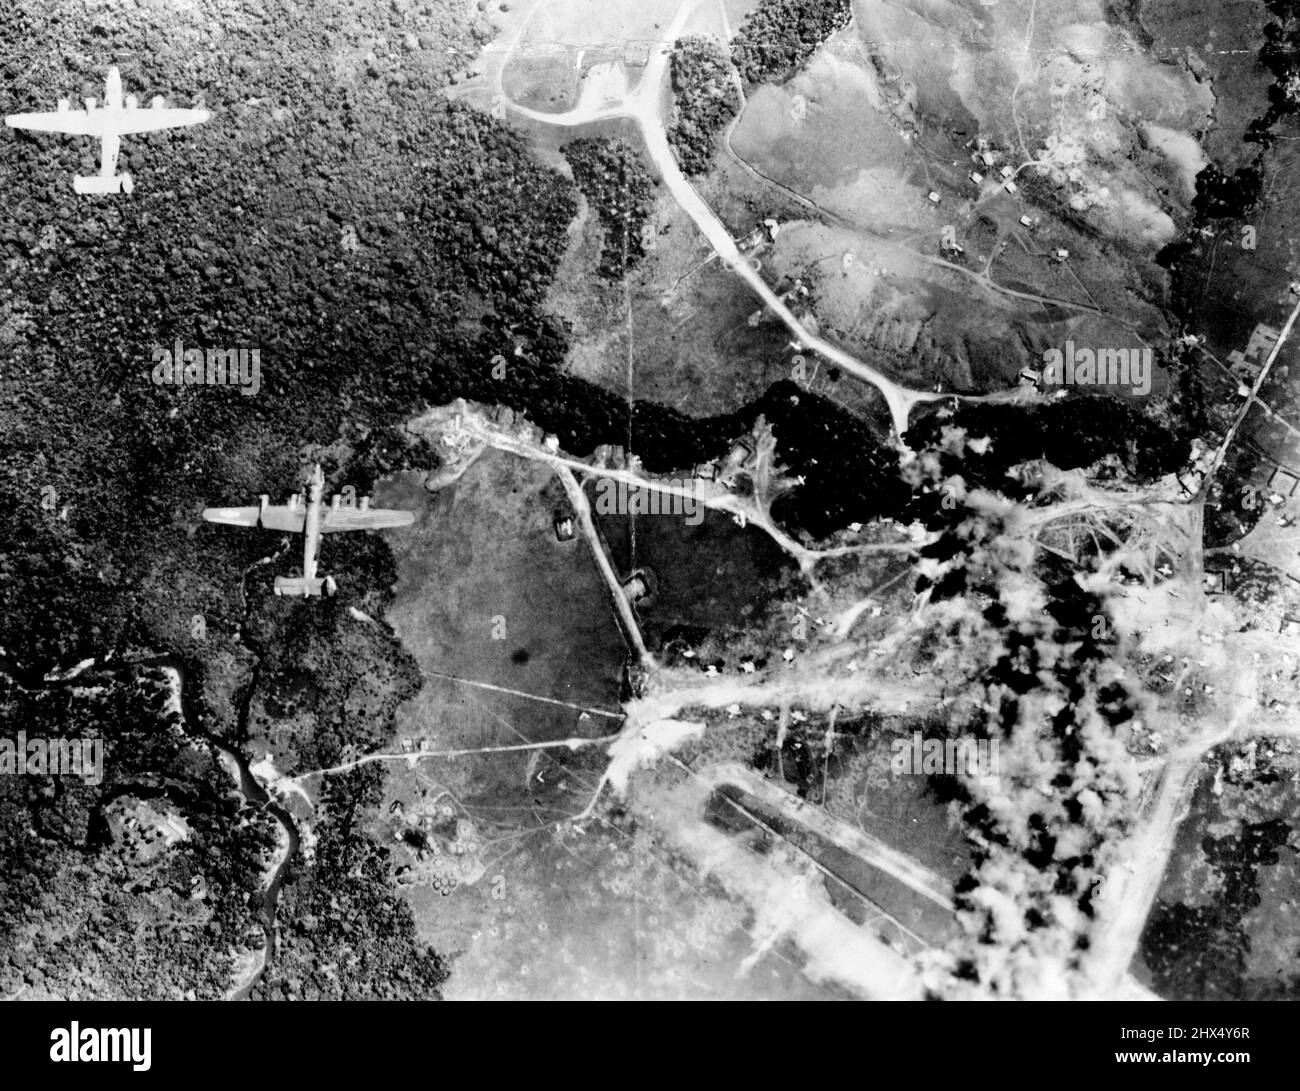 Bei drei schweren Angriffen zerstörten die Bomber von General MacArthur 288 feindliche Flugzeuge auf japanischen Flugplätzen in Hollandia oder beschädigten sie irreparabel. Hier fliegen Liberatoren weiter, nachdem sie die Zerstreuungsgebiete zermahlen haben. 5. April 1944. (Foto der Fifth Air Force der USA). Stockfoto